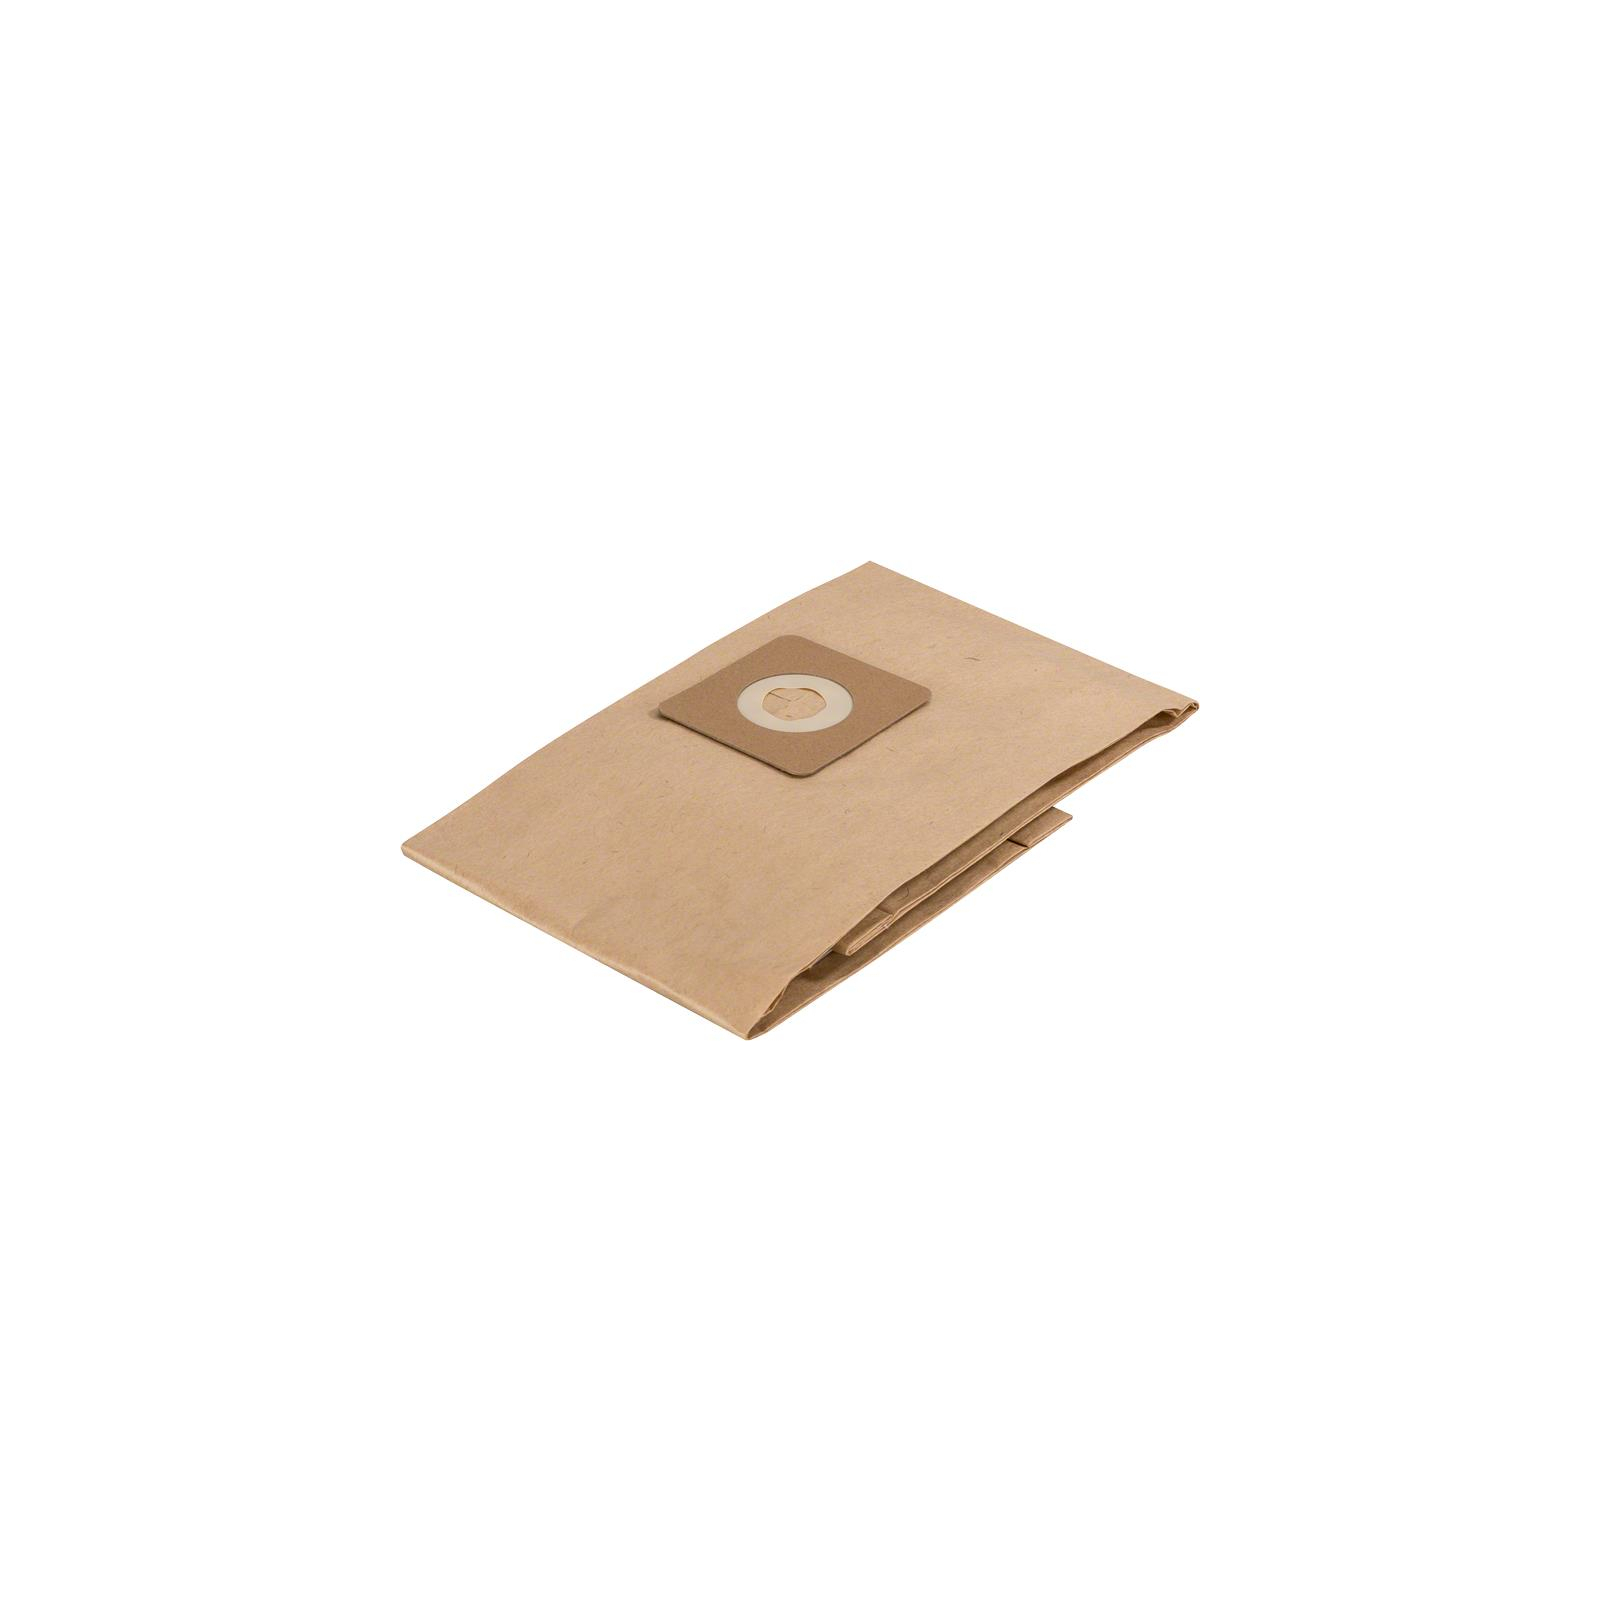 Мешок для пылесоса Bosch VAC 15 бумажный, 5шт (2.609.256.F32)